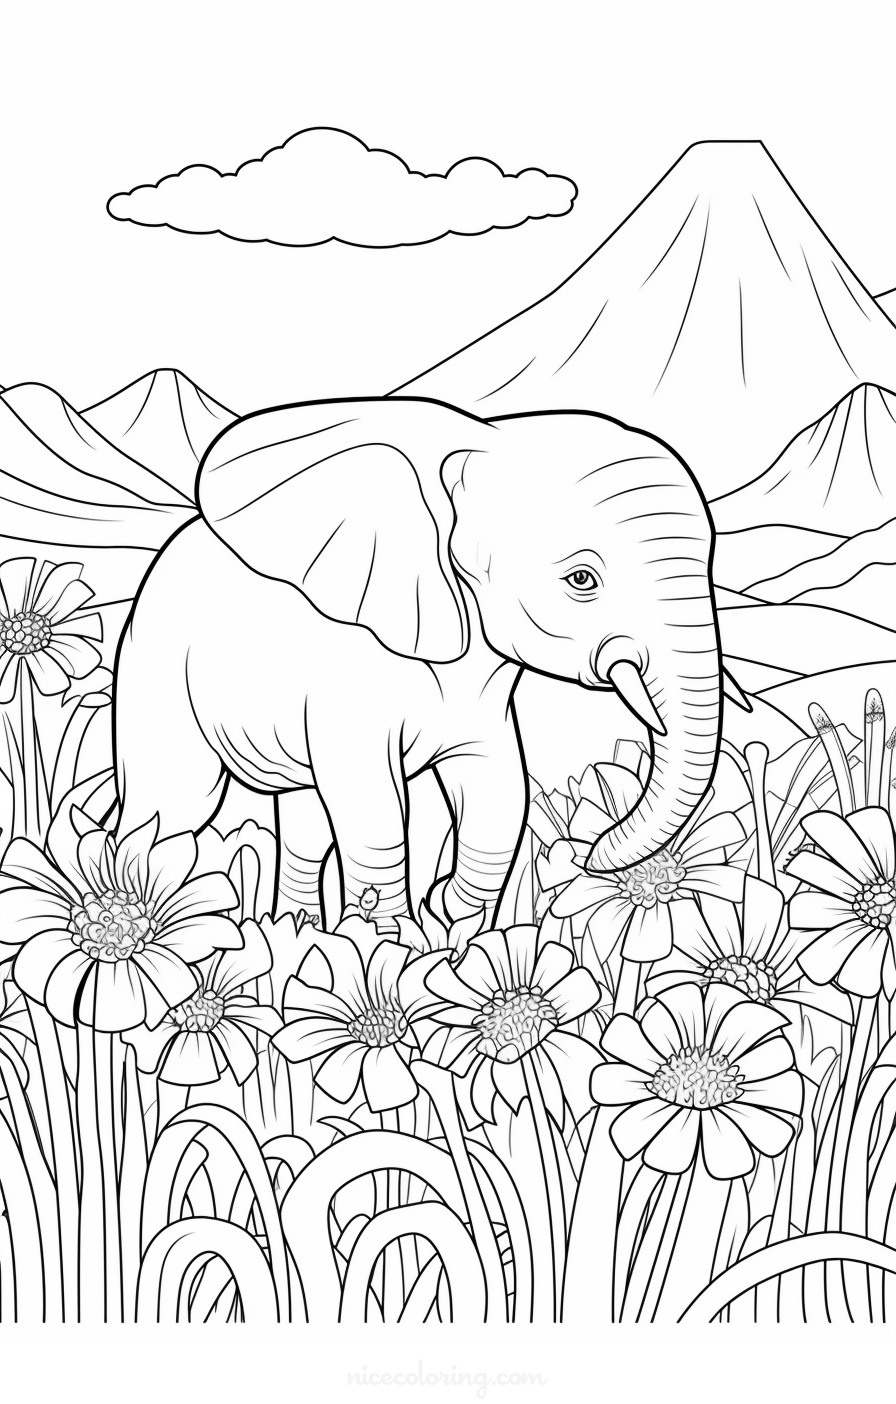 Página para colorear de elefante bebé jugando con agua